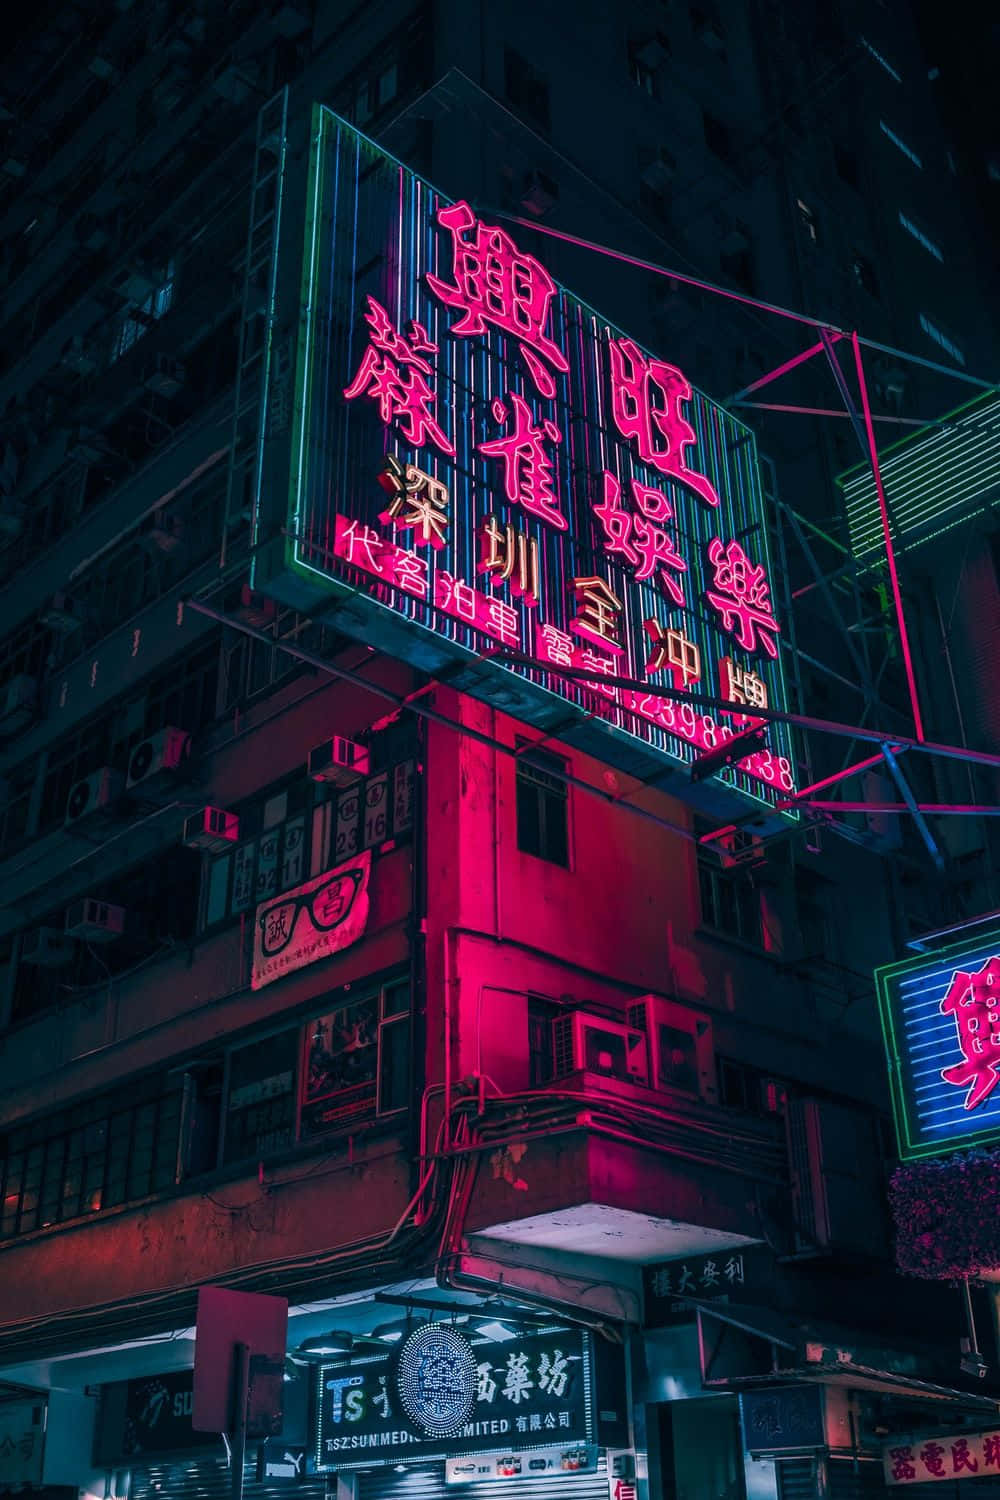 A picture of futuristic Tokyo during the Cyberpunk era. Wallpaper